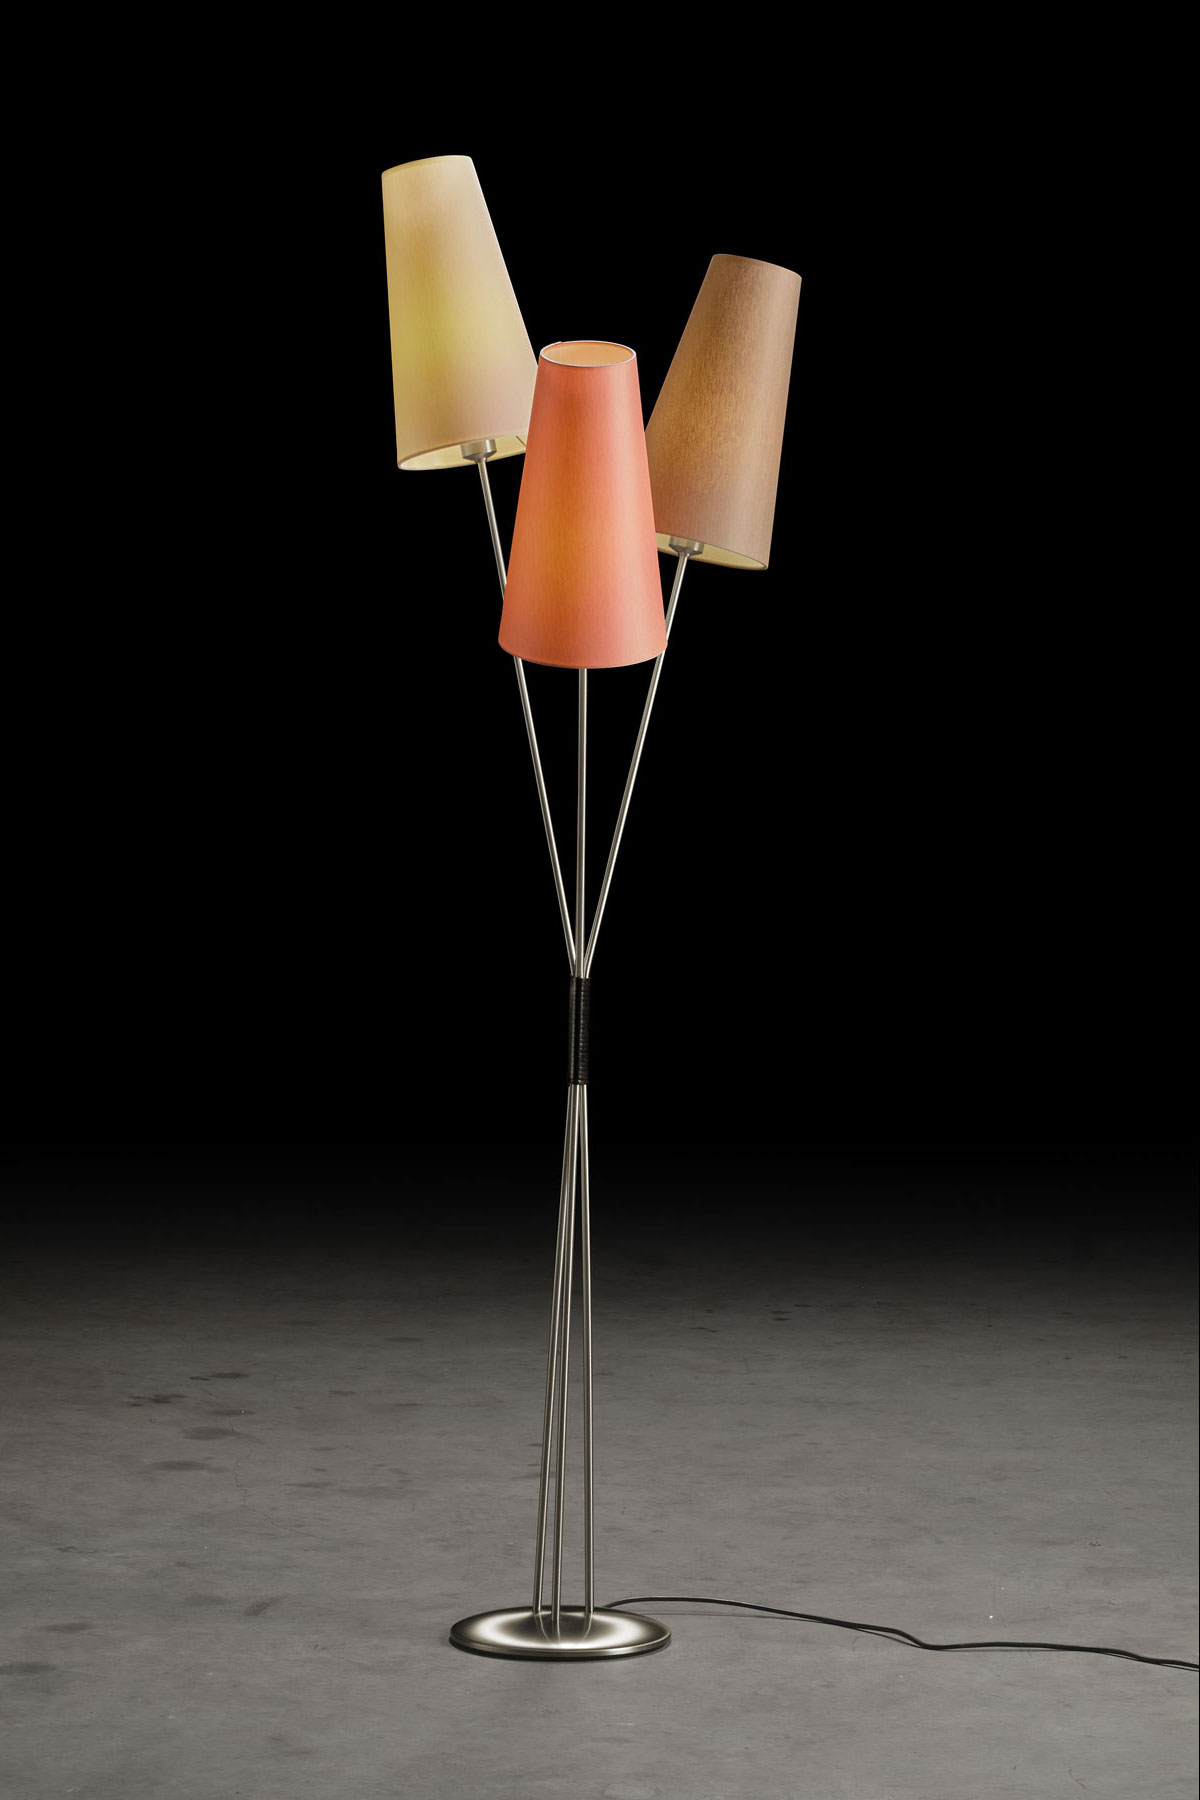 FIFTIES – Stehlampe im 50er Jahre-Look mit drei Schirmen im Bündel, viele Farben: Gestell in Nickel matt, Schirme in Rosa, Champagner, Taupe